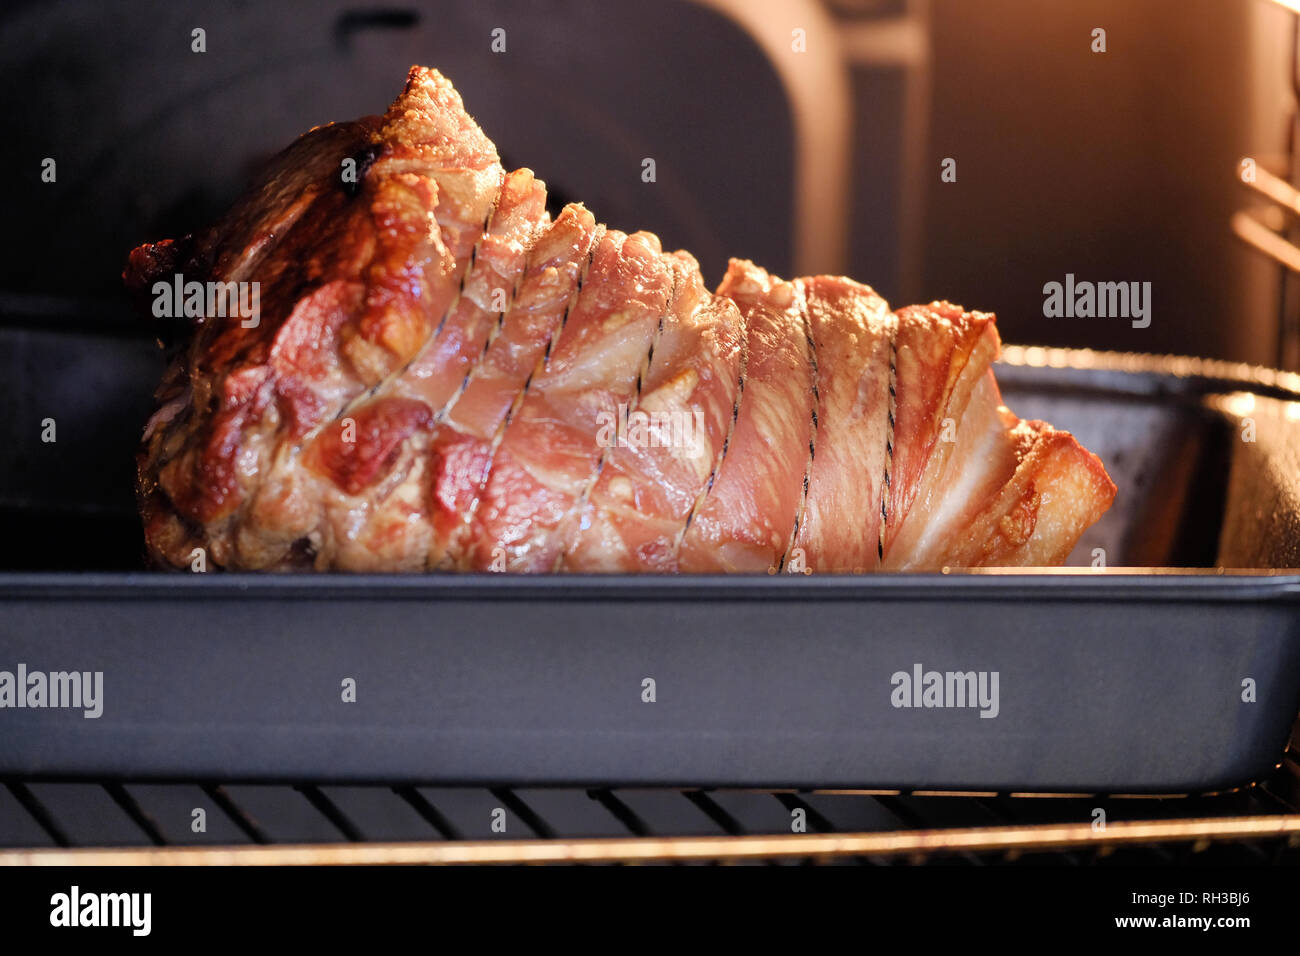 Ein braten lecker aussehenden Schulter von Schweinefleisch kochen im Ofen. Das Knistern ist braun und knusprig und die gemeinsame wird zusammen mit String statt Stockfoto